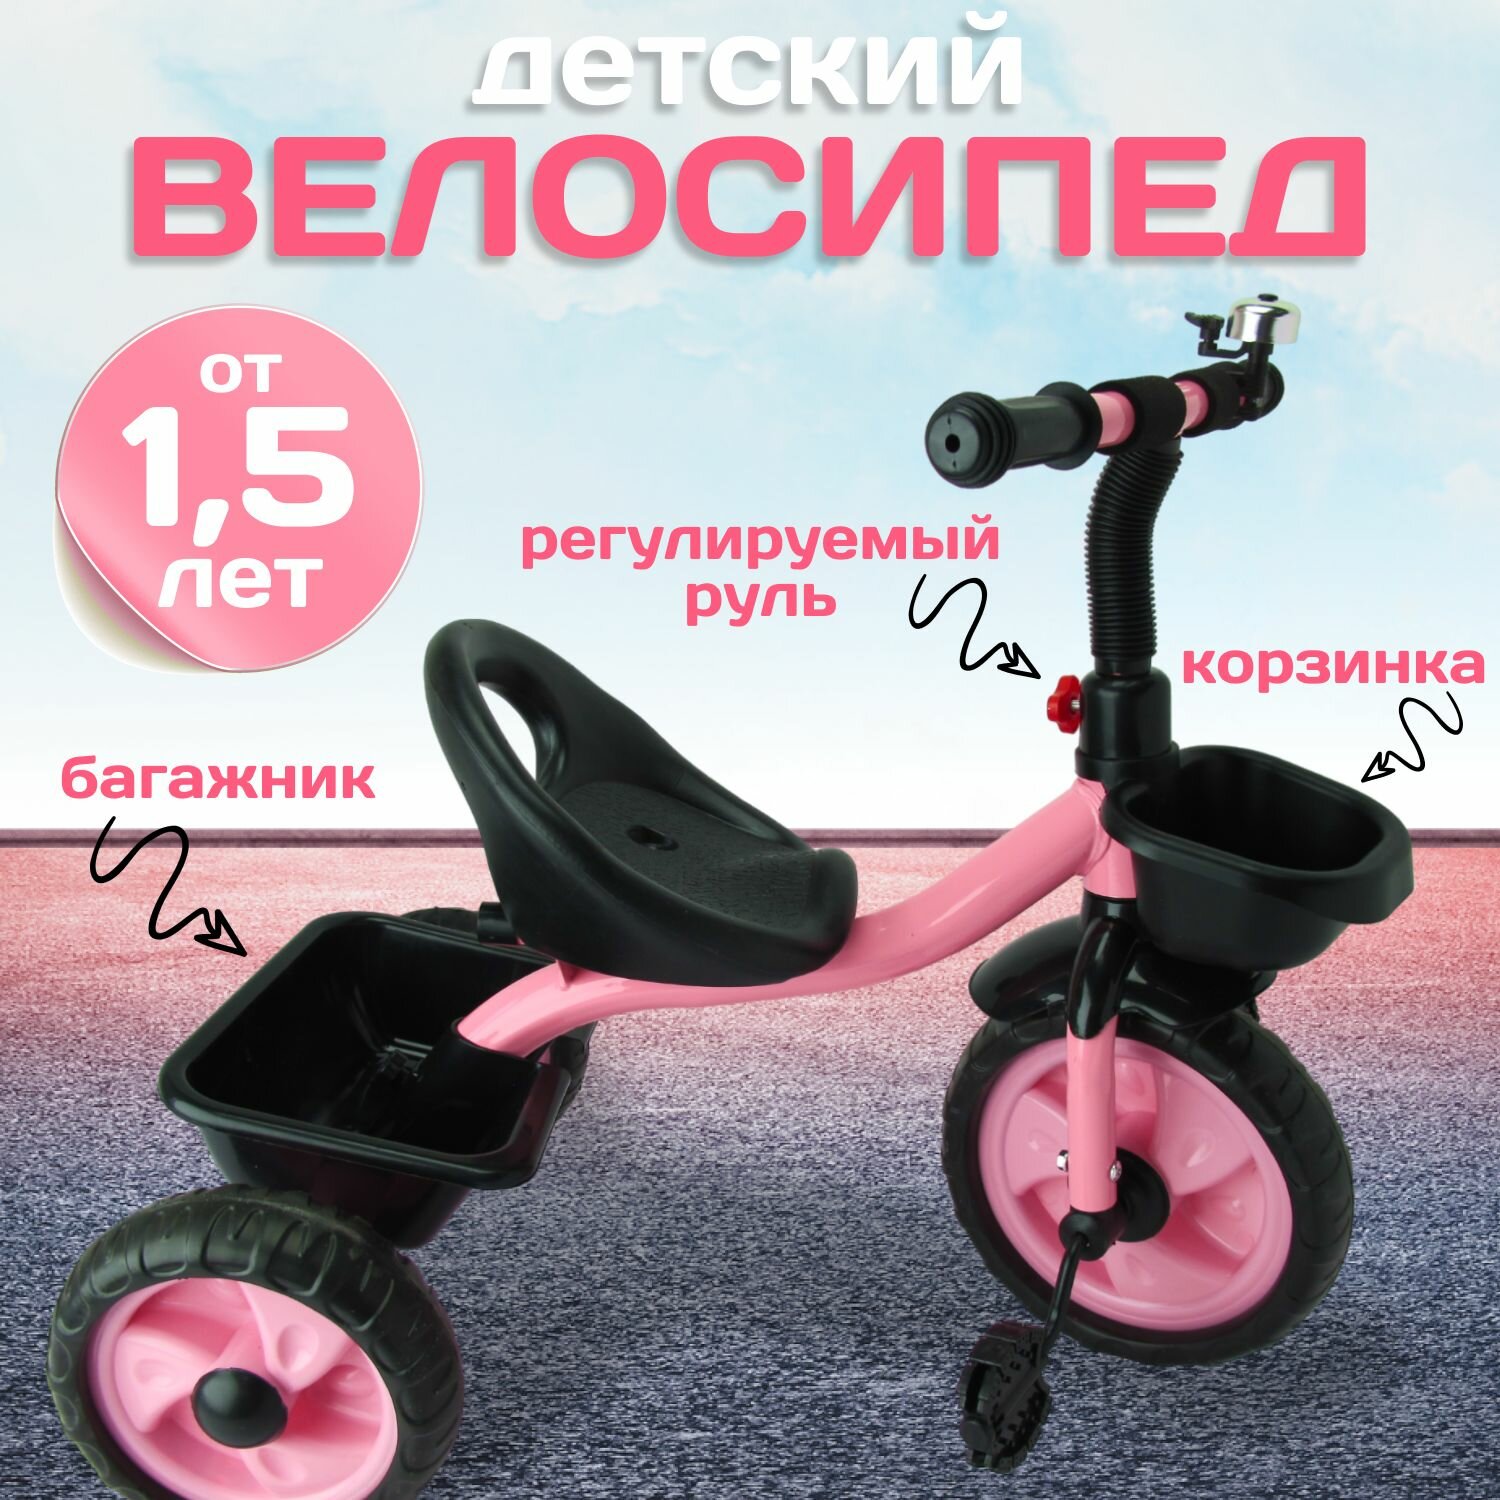 Детский велосипед трехколесный 10" и 8" EVA с корзинками, звонок. Розовый